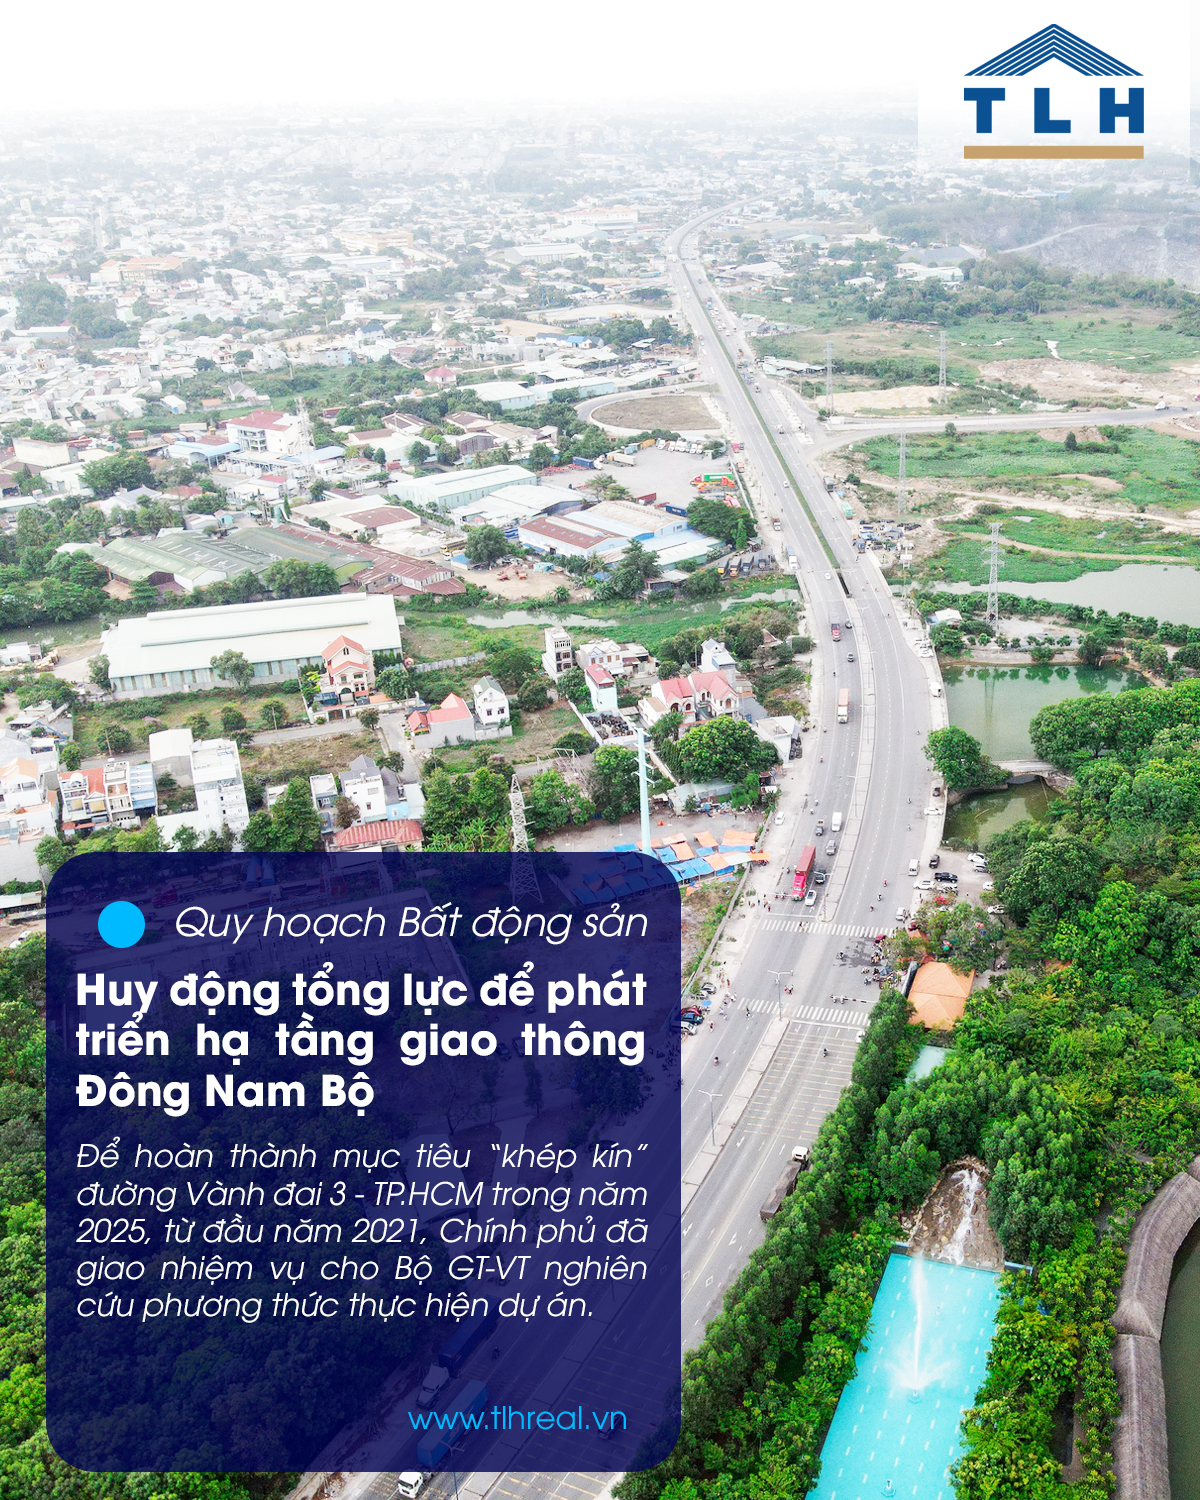 Huy động tổng lực để phát triển hạ tầng giao thông Đông Nam Bộ